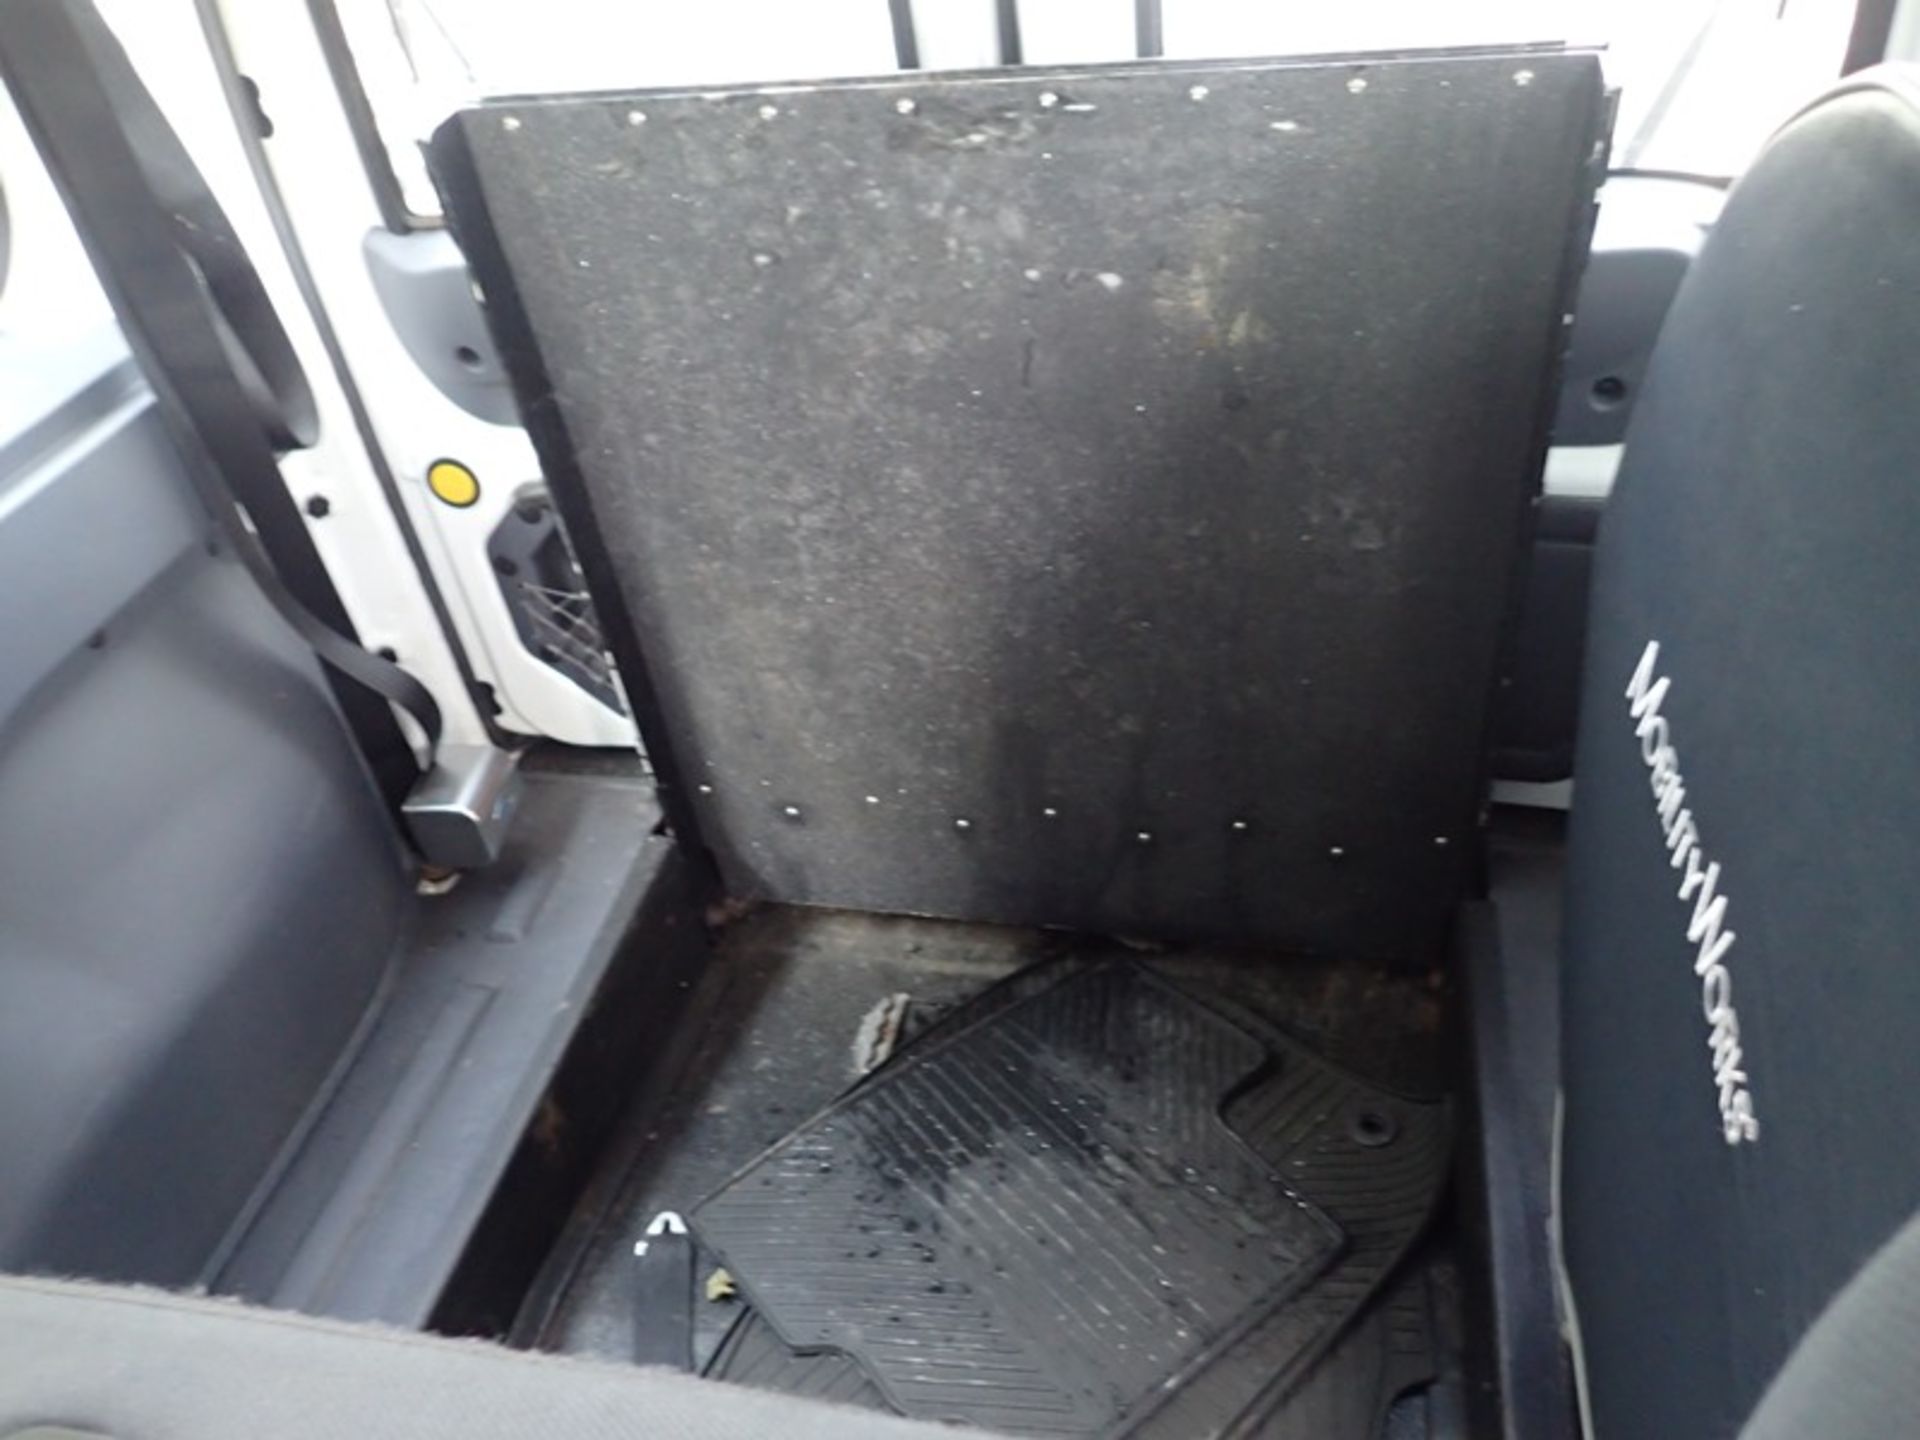 2013 Ford Transit wheel chair van vin #NM0K59CN7DT142152 - Image 7 of 7